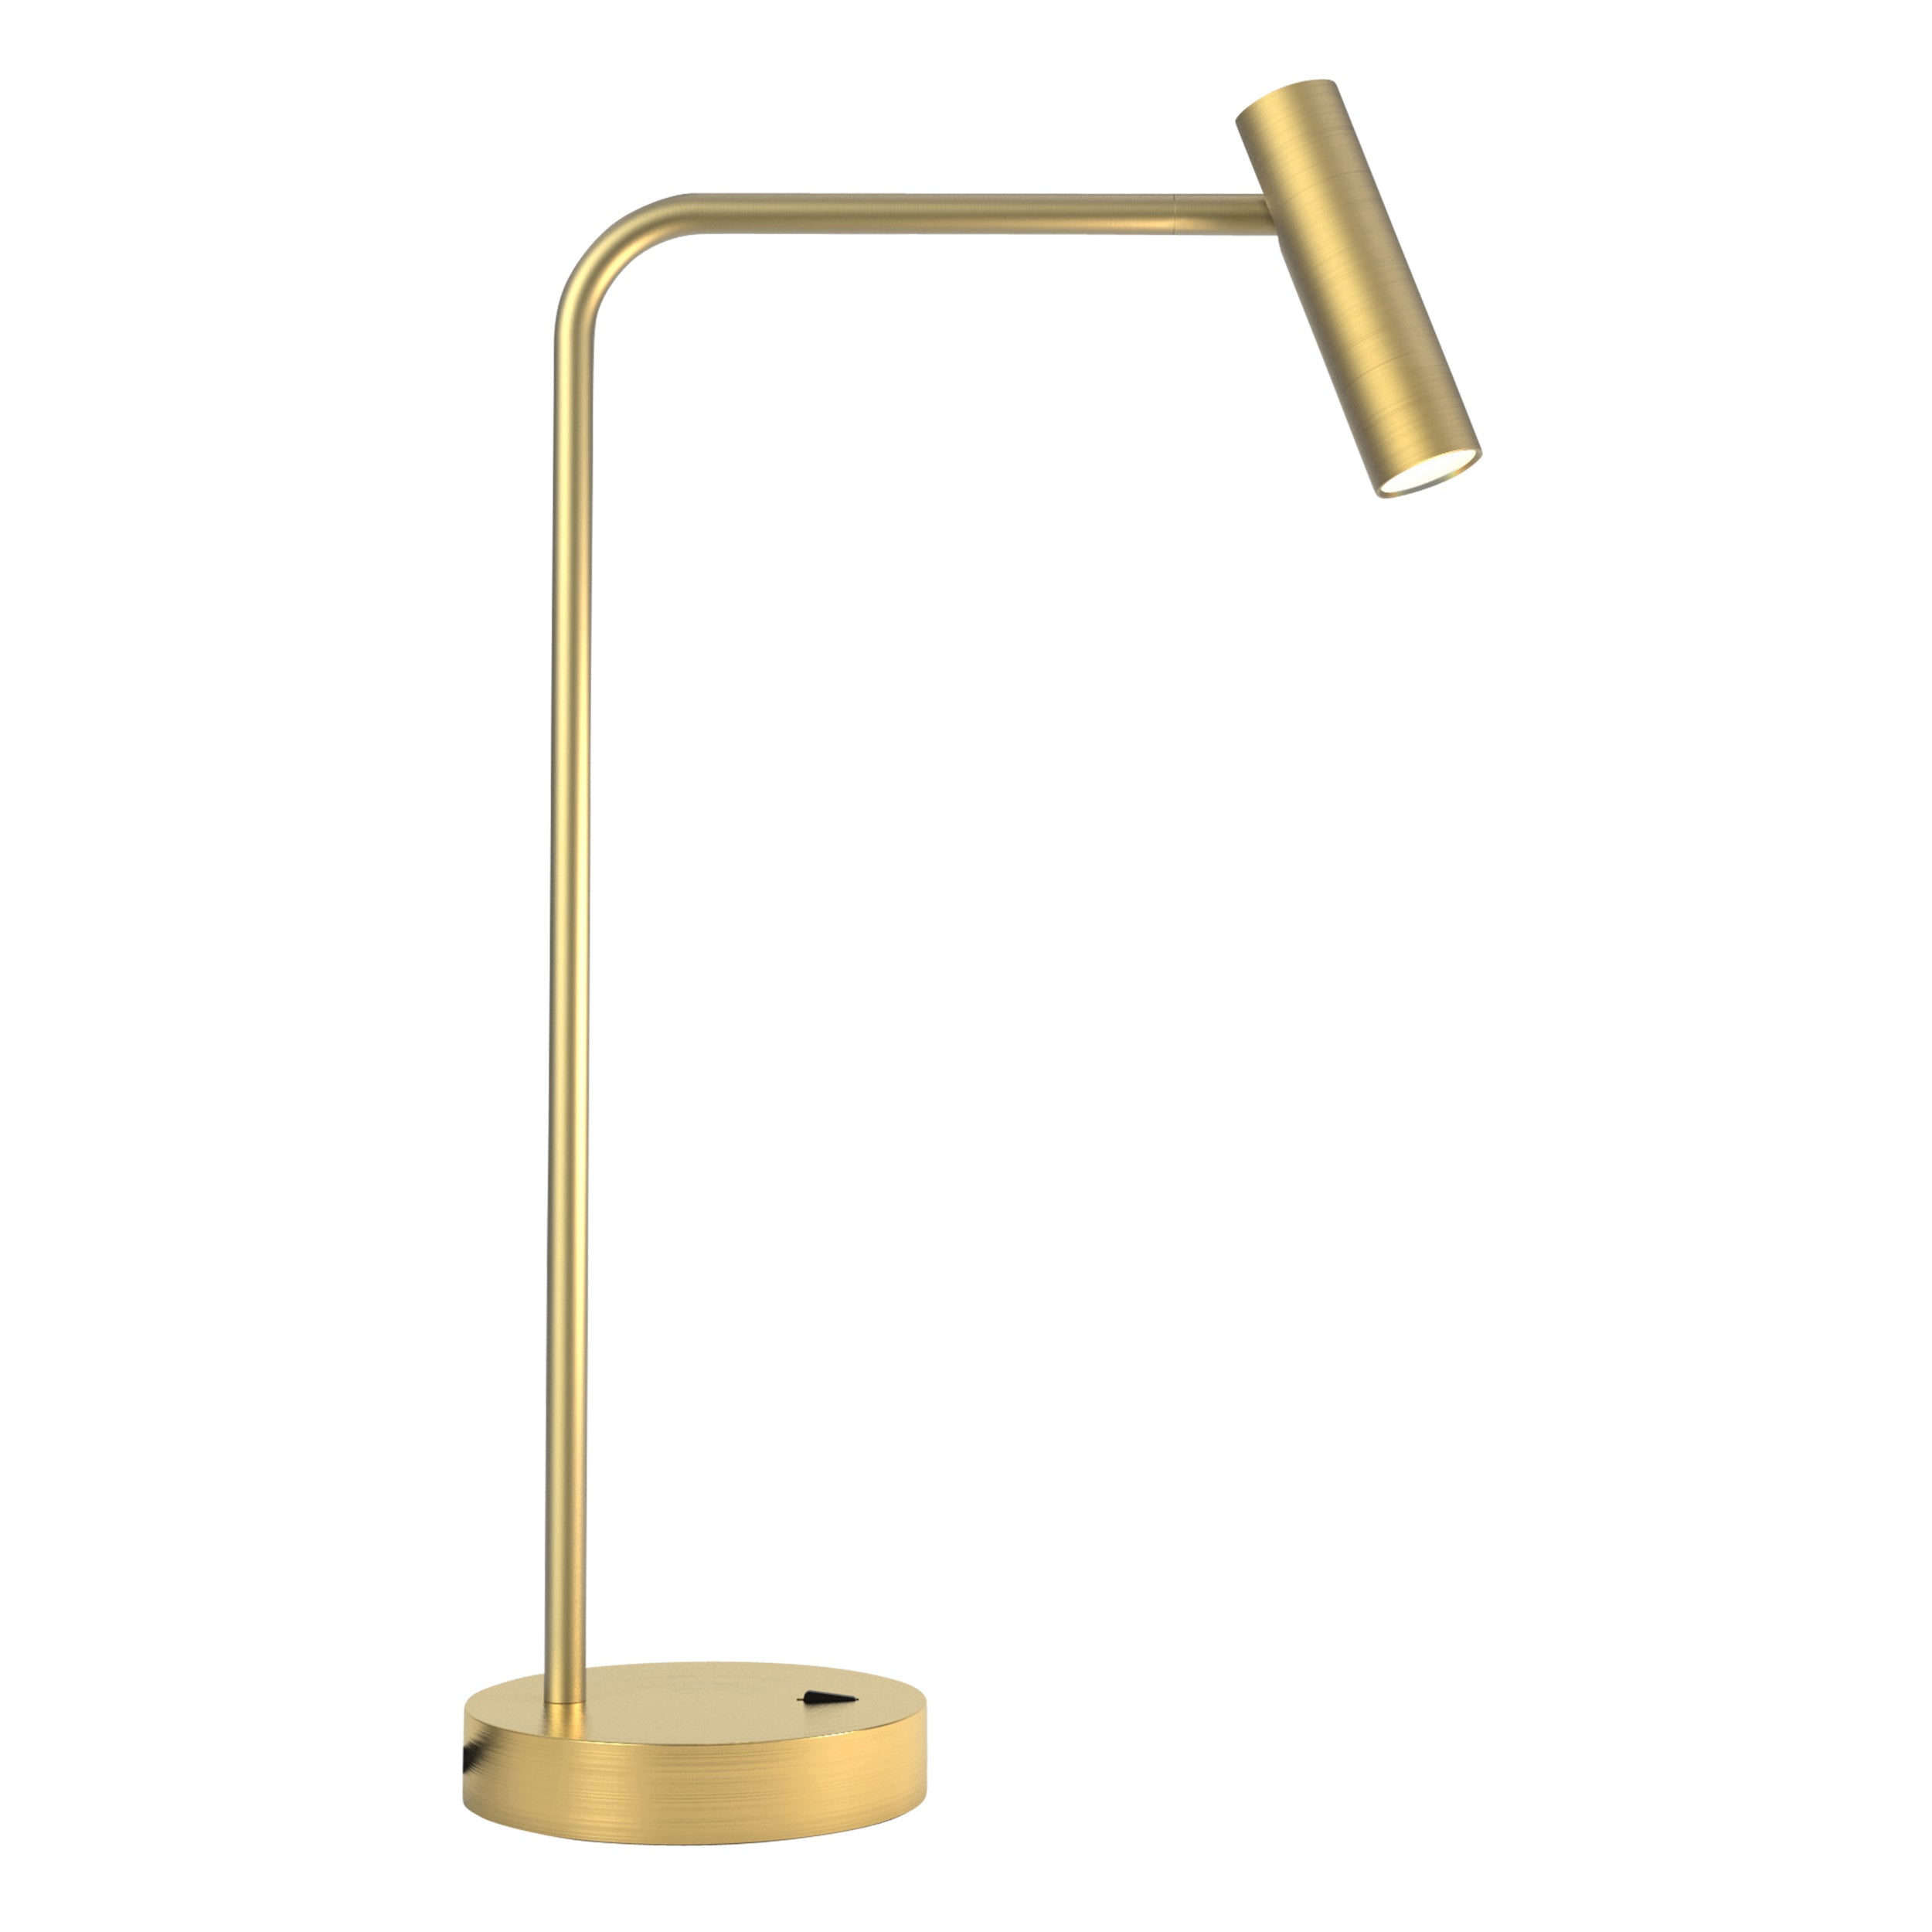 Bordlampe i guldfarvet aluminium med bøjet hals, rund fod og et aflangt, rundt, justerbart hoved.